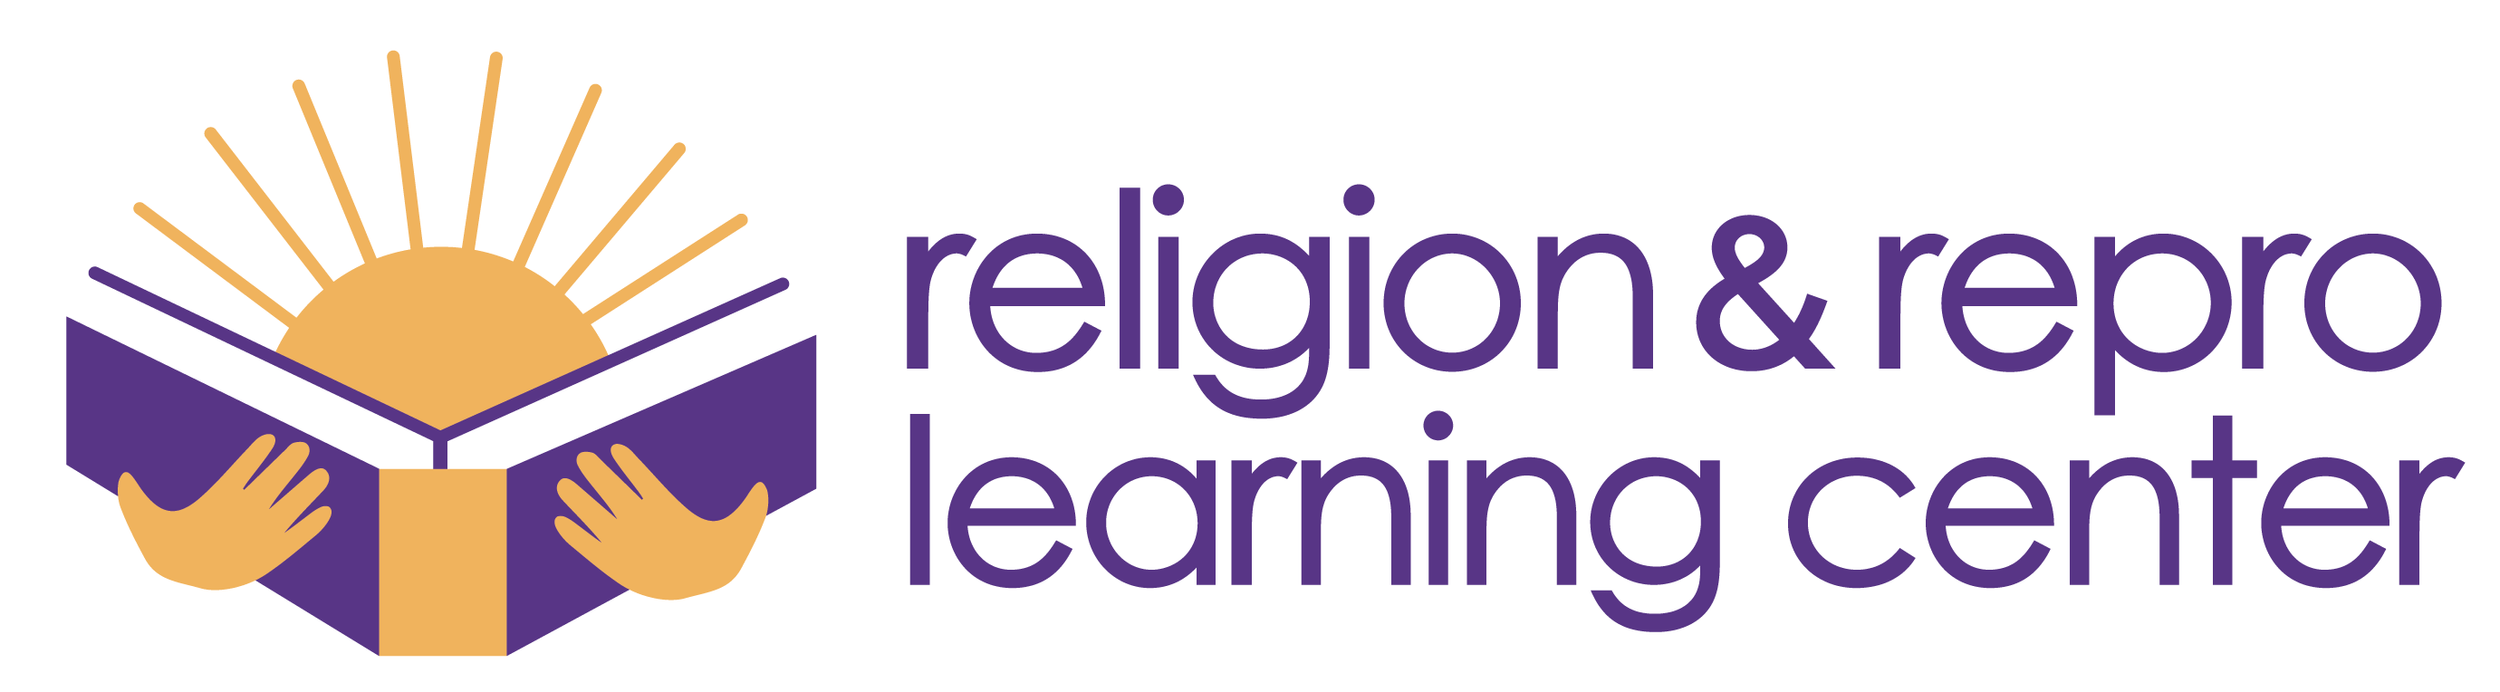 Religion &amp; Repro Learning Center - ONLINE